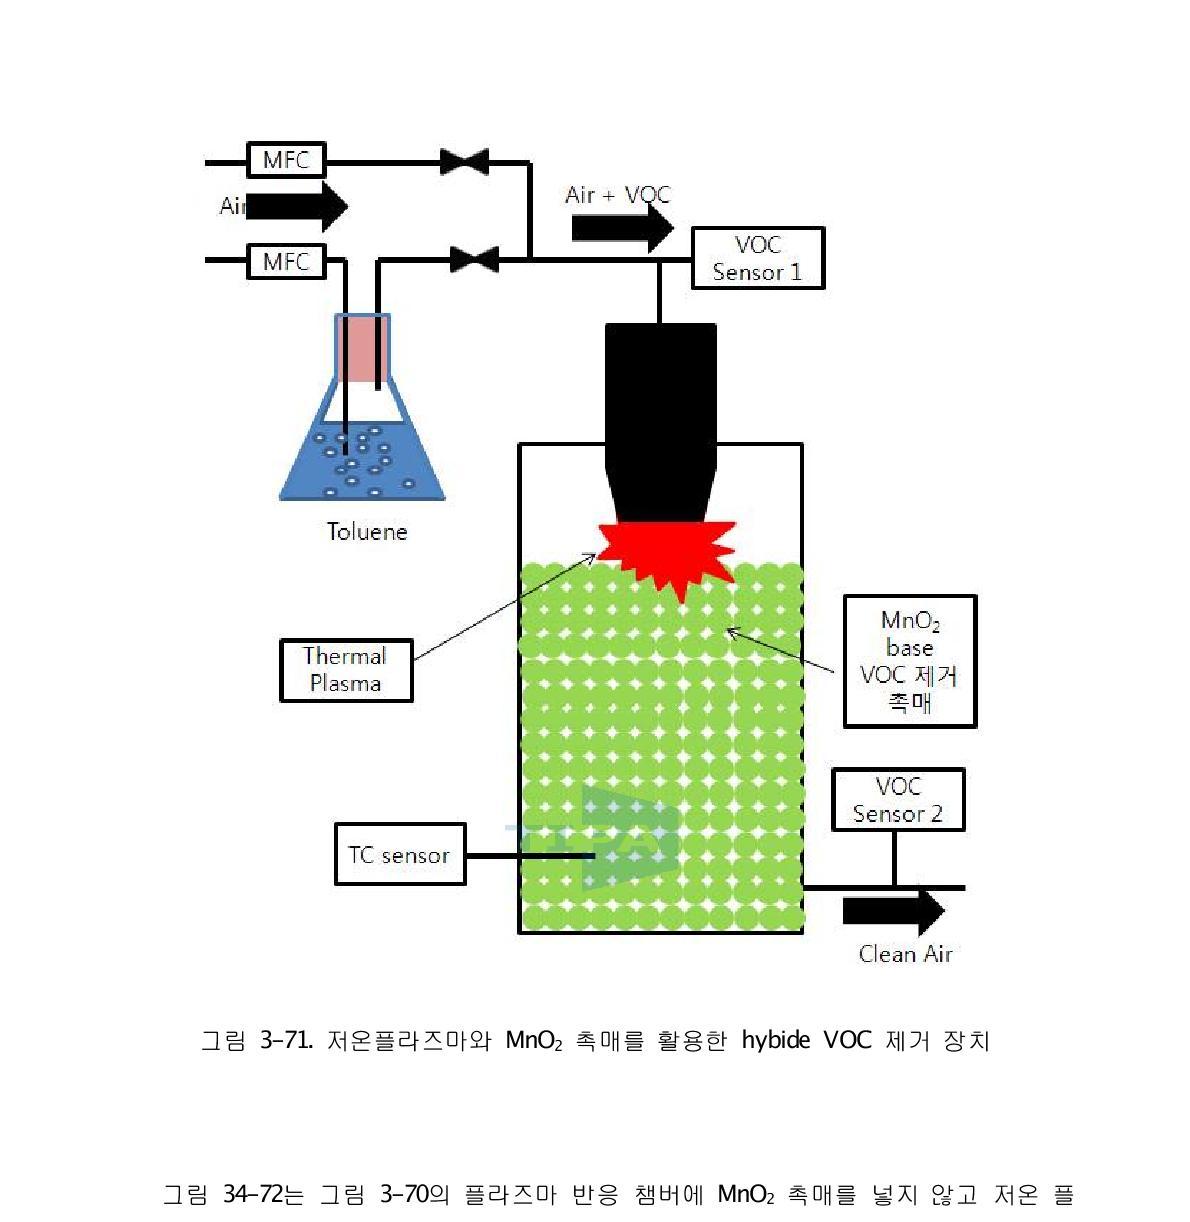 저온플라즈마와 MnO2 촉매를 활용한 hybide VOC 제거 장치